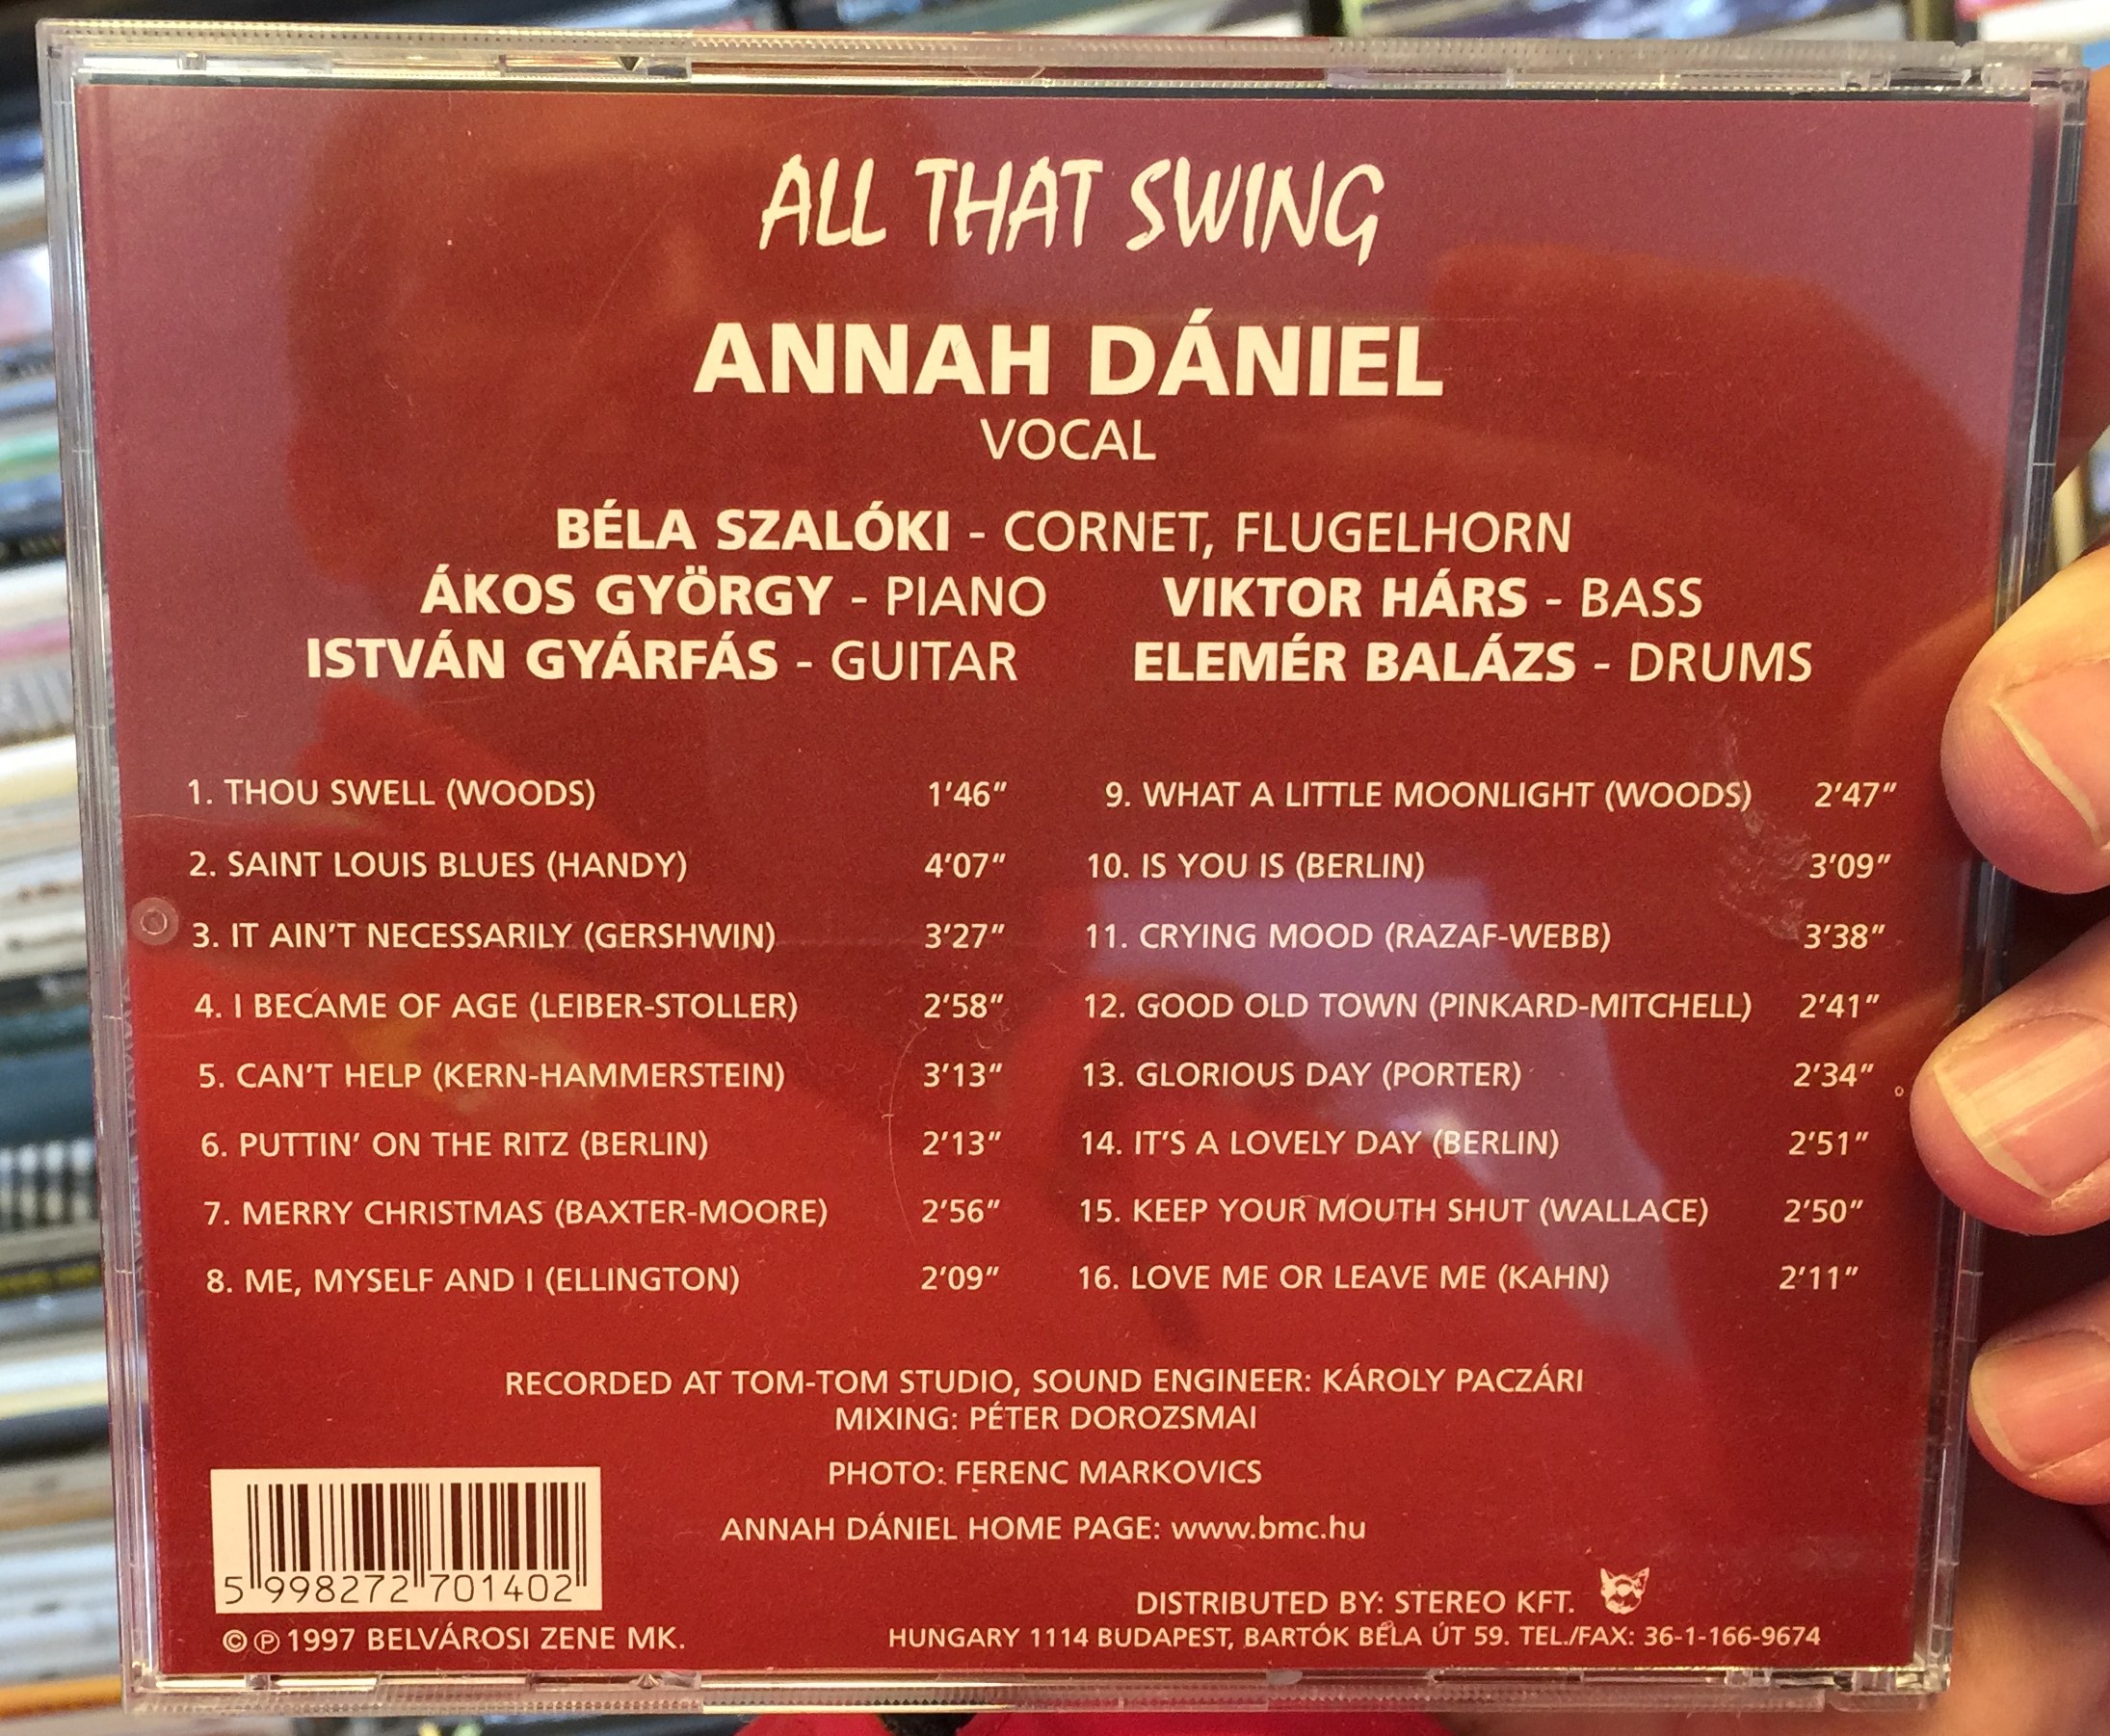 all-that-swing-annah-daniel-belvarosi-zene-mk.-audio-cd-1997-5998272701402-2-.jpg